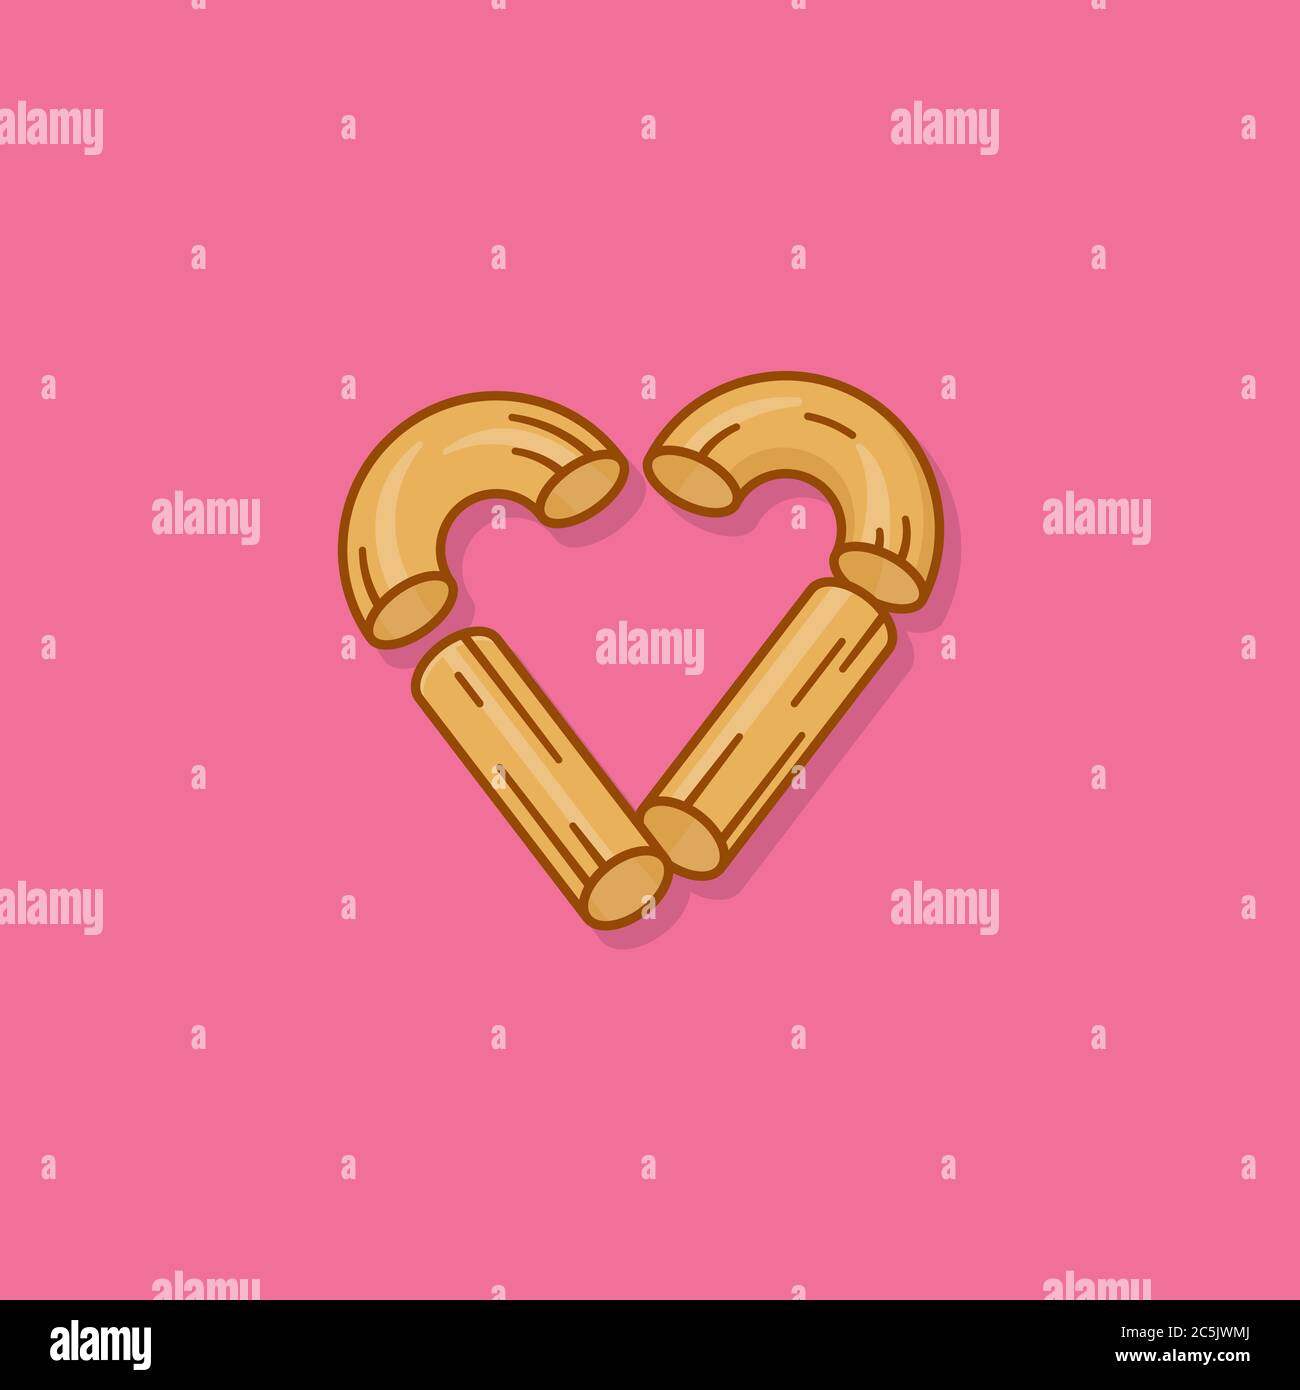 Macaroni disposé en forme de coeur illustration vecteur pour la fête de Macaroni le 7 juillet. Symbole de l'amour des pâtes italiennes. Illustration de Vecteur